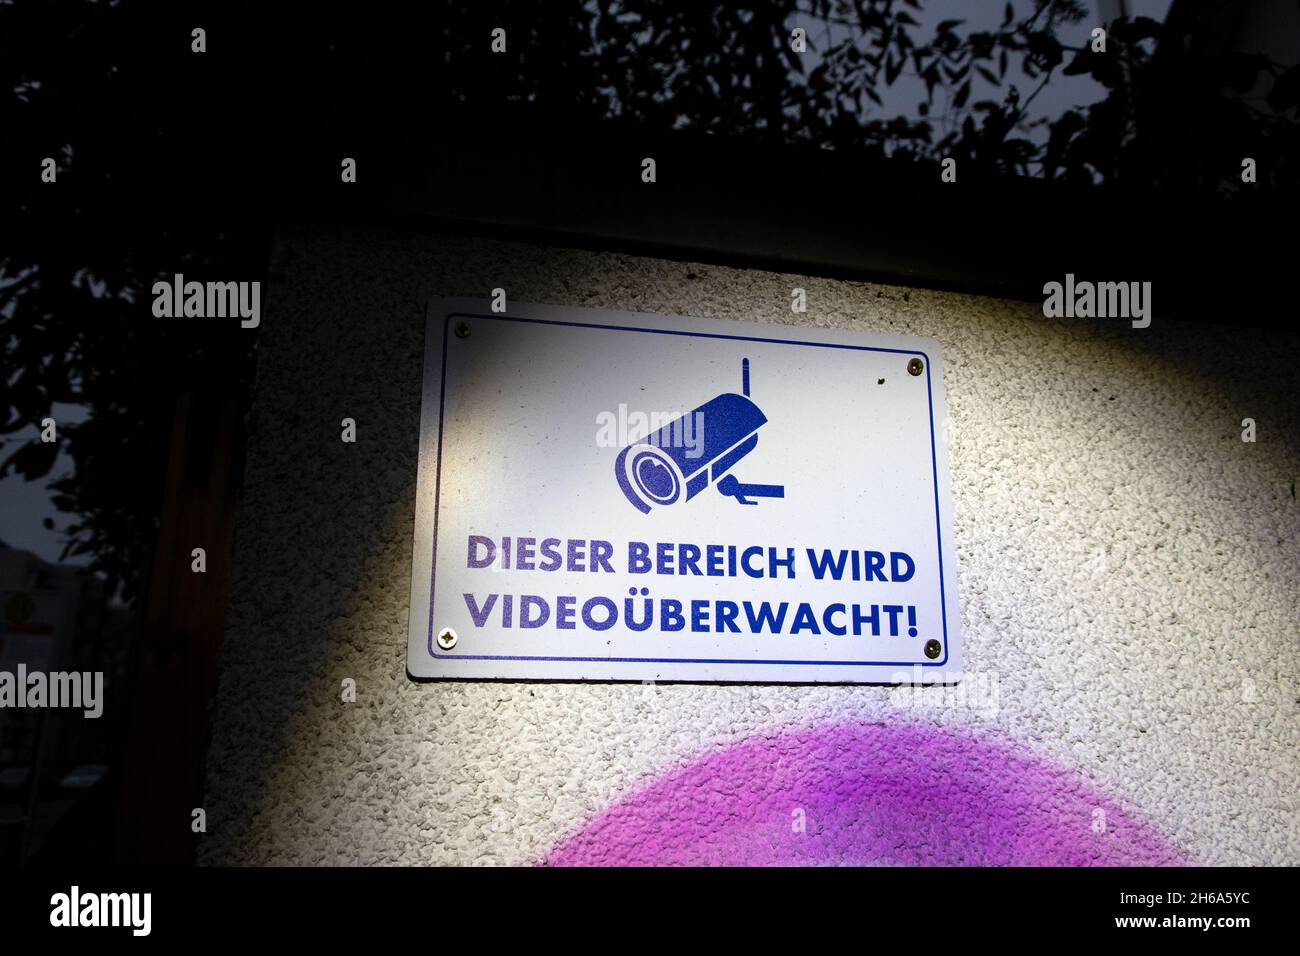 Ein Schild zur Information über die Installation eine Videoüberwachung. Schutz vor Einbrechern. Foto Stock